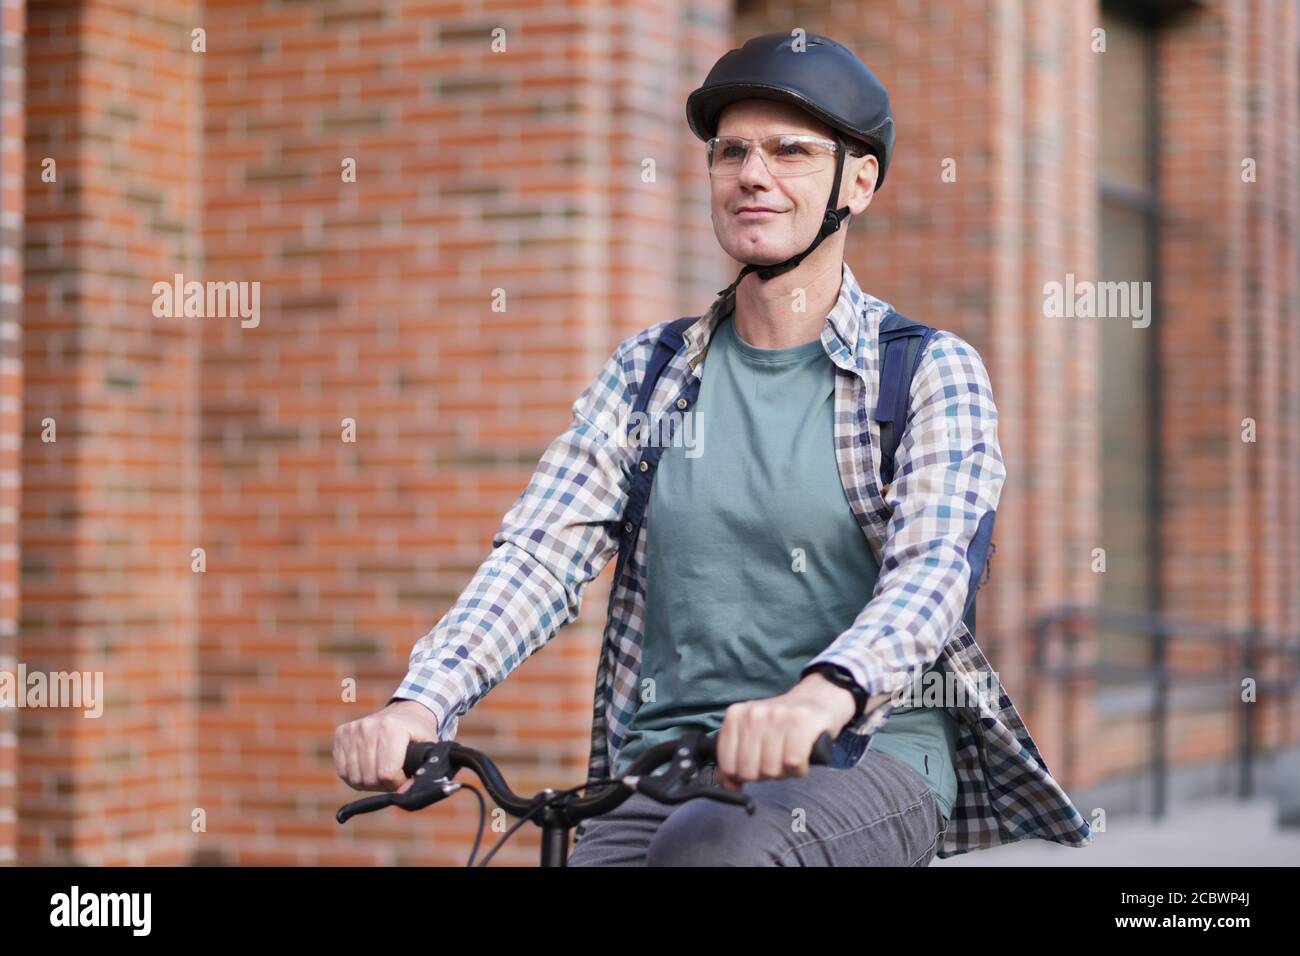 Reifer Kaukasischer Mann in einem Fahrradhelm auf seinem Fahrrad In einer Stadt Stockfoto